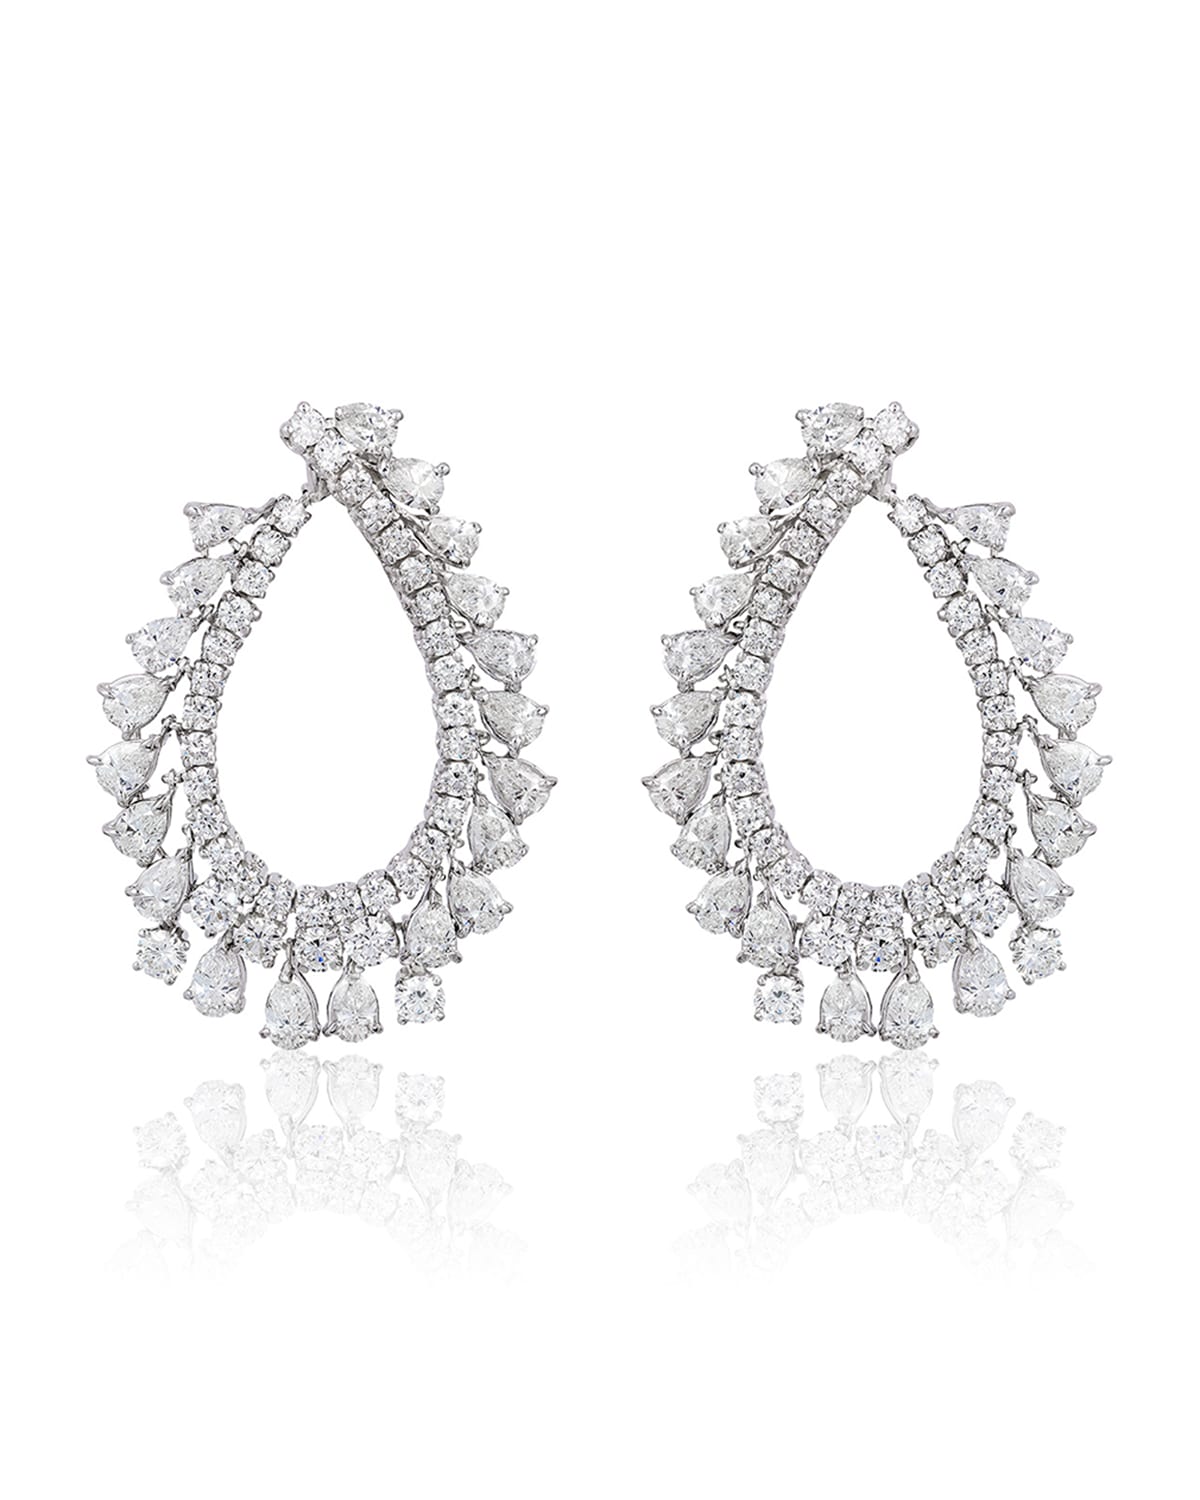 Andreoli 18k White Gold Diamond Pear Hoop Earrings